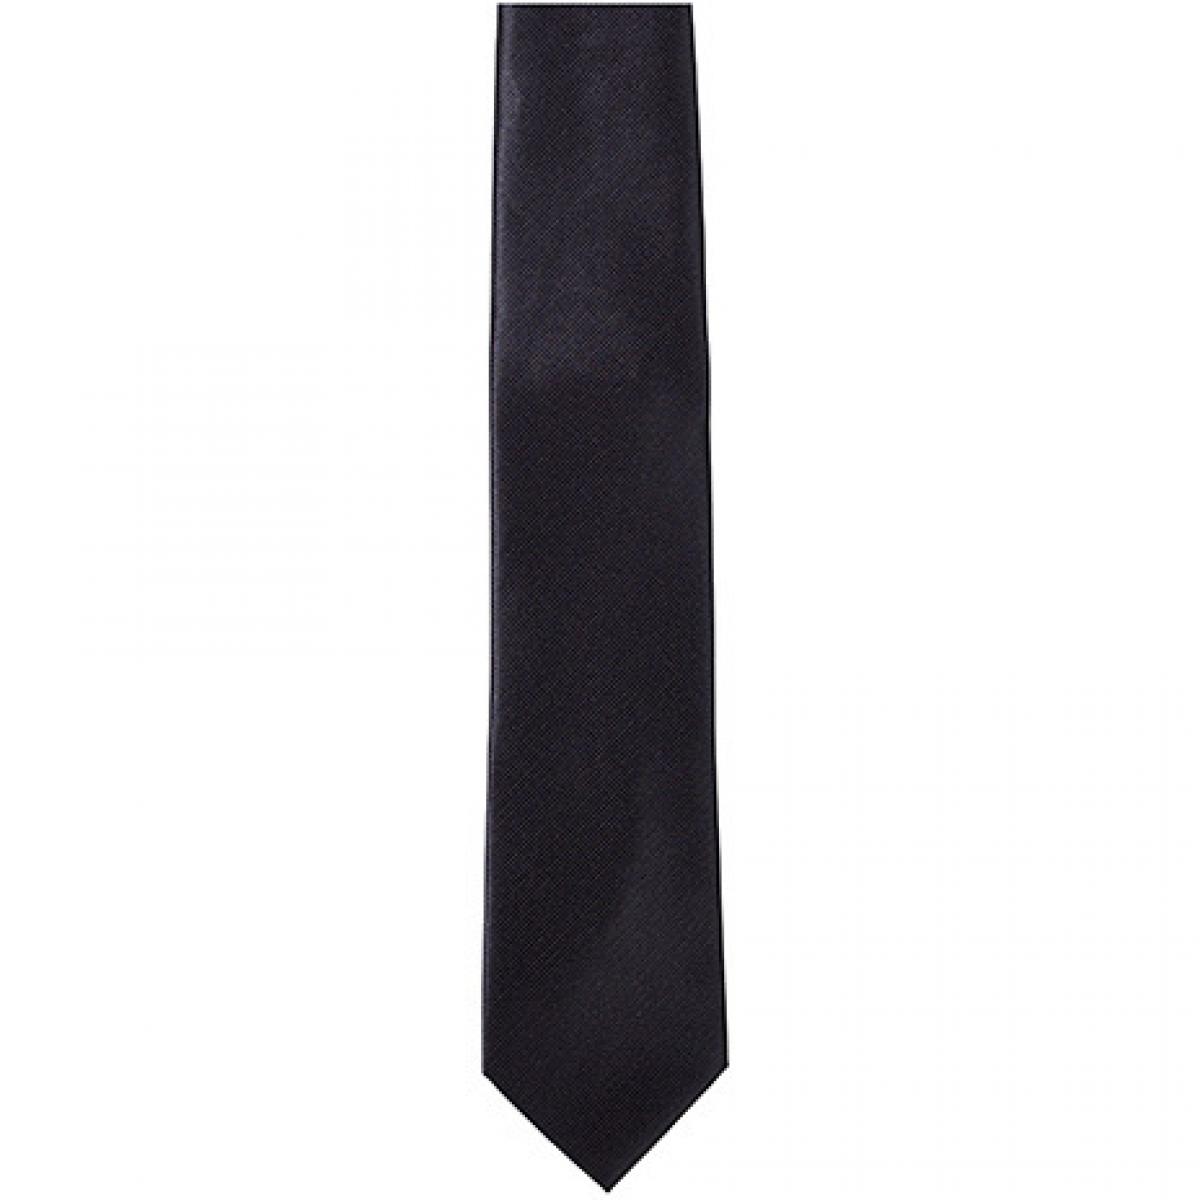 Hersteller: TYTO Herstellernummer: TT902 Artikelbezeichnung: Twill Tie / 144 x 8,5cm Farbe: Black